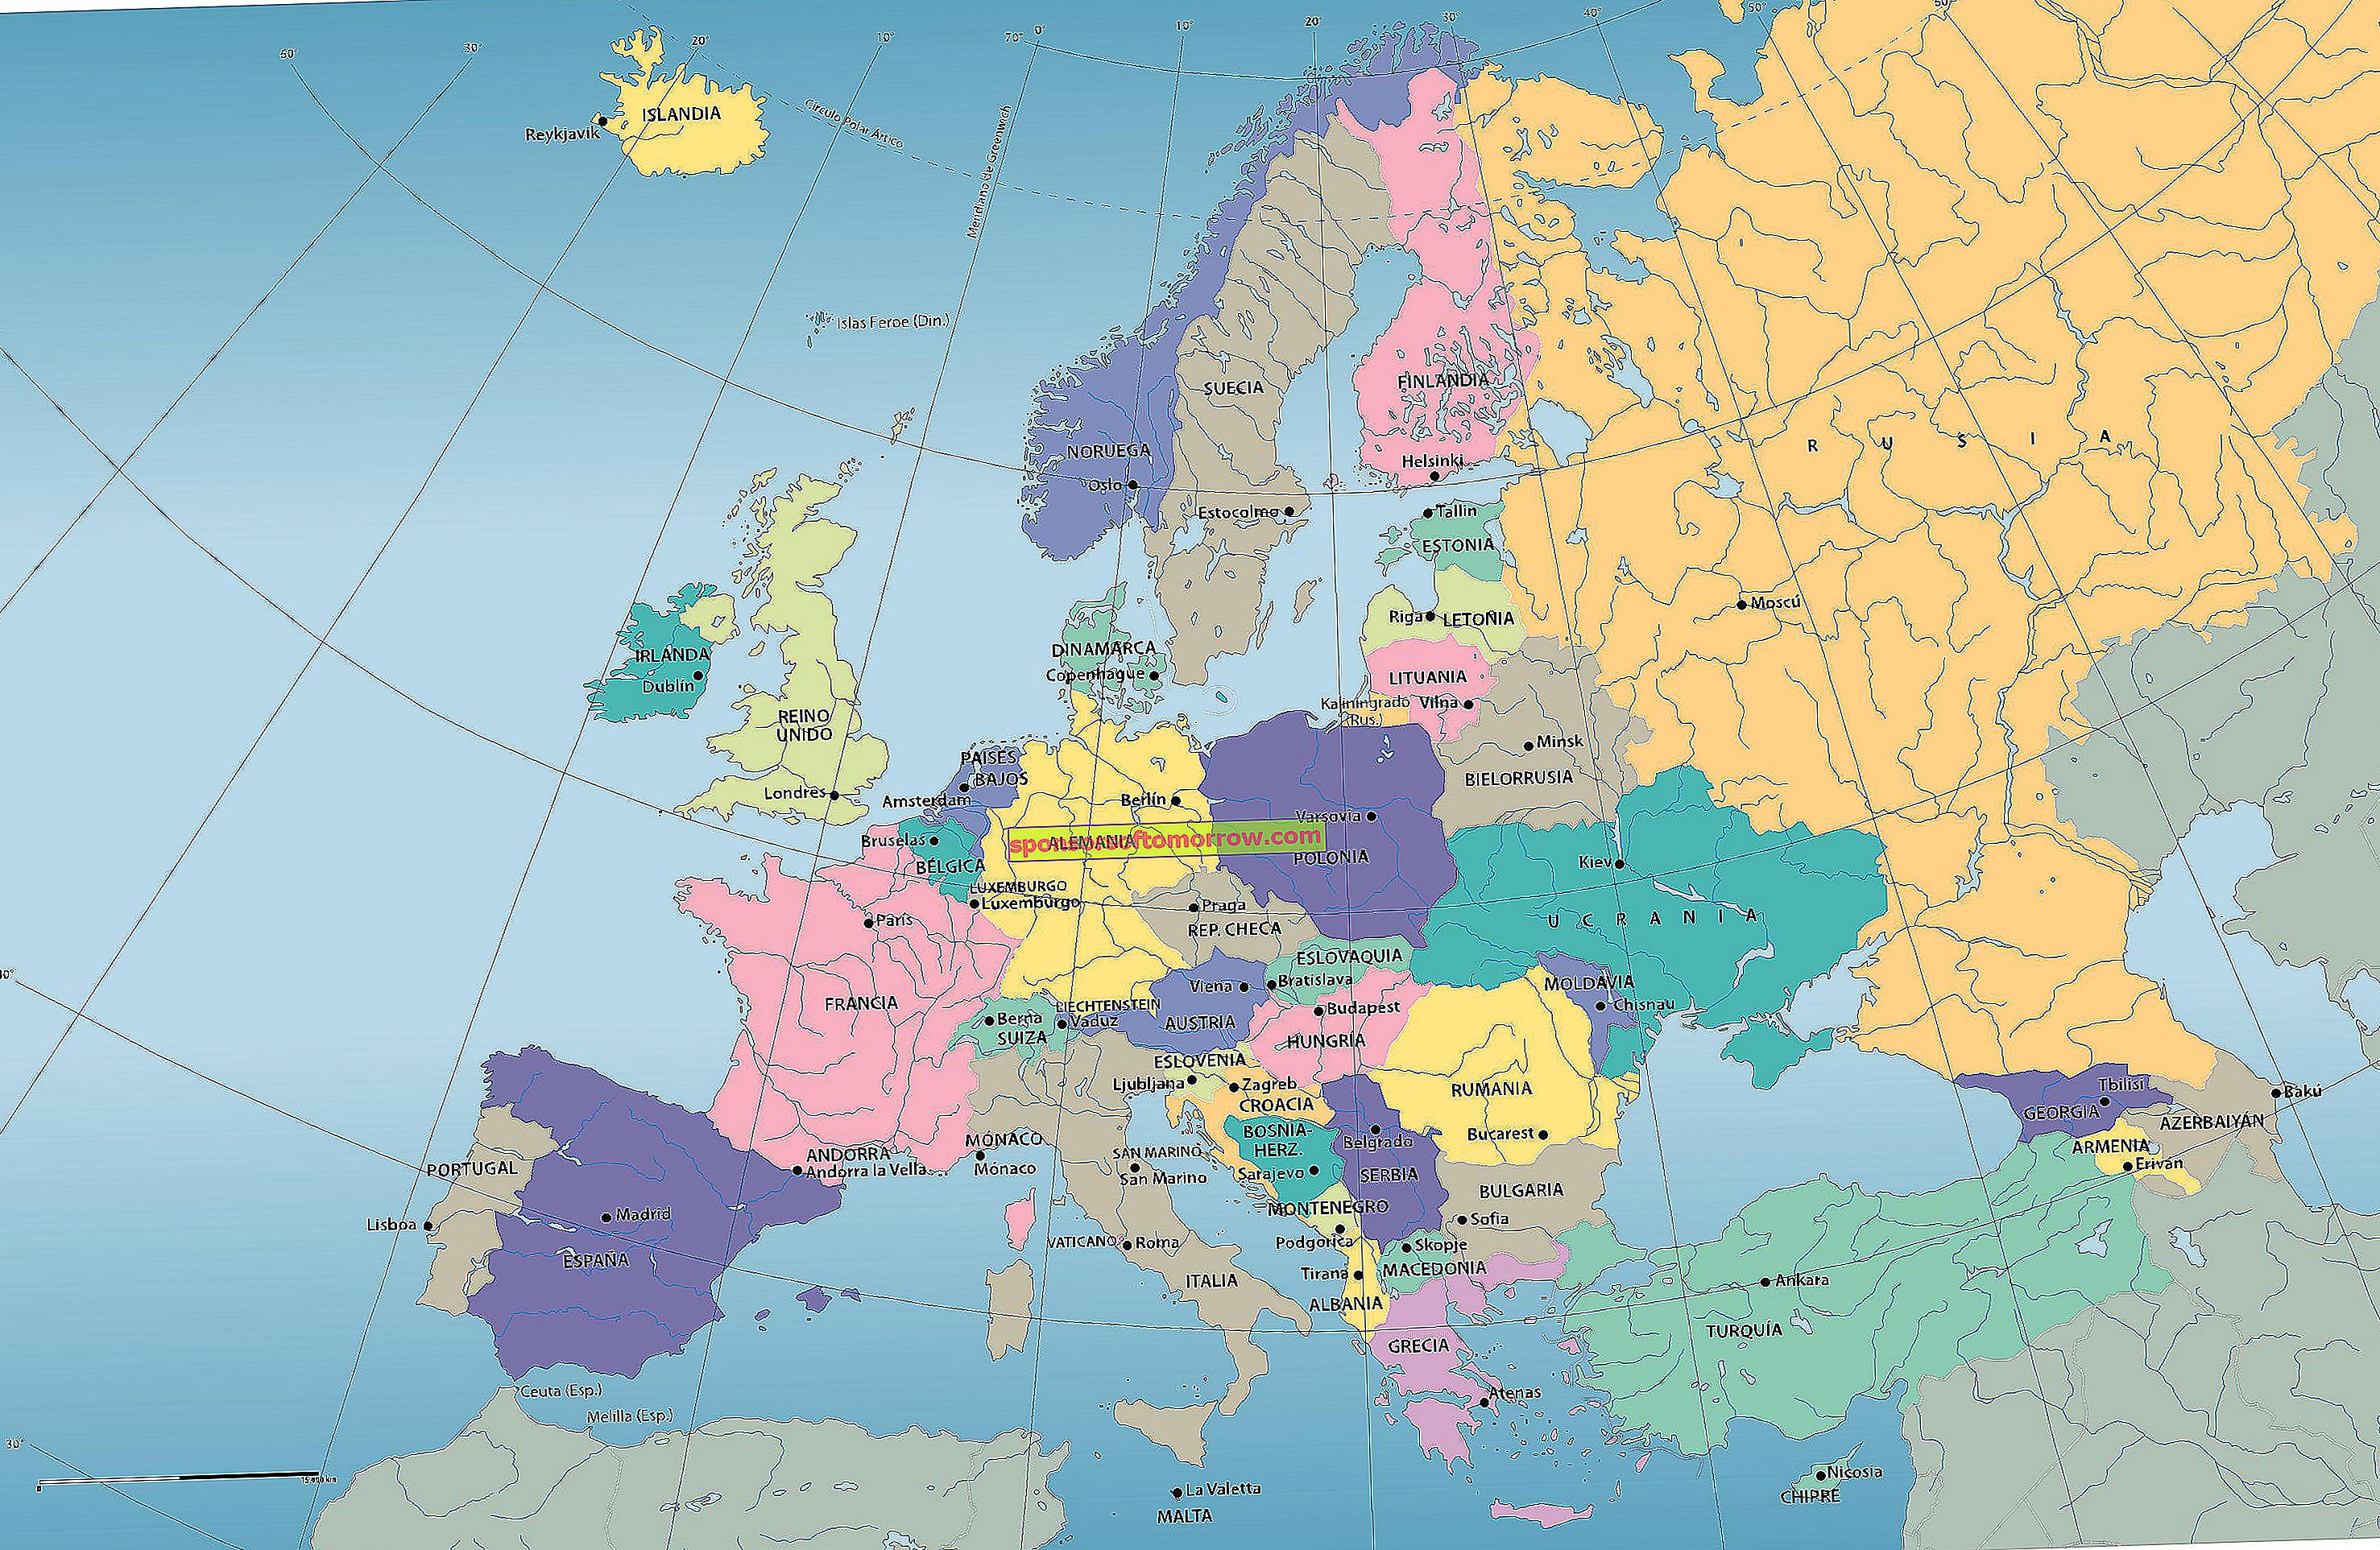 une autre carte politique de l'europe